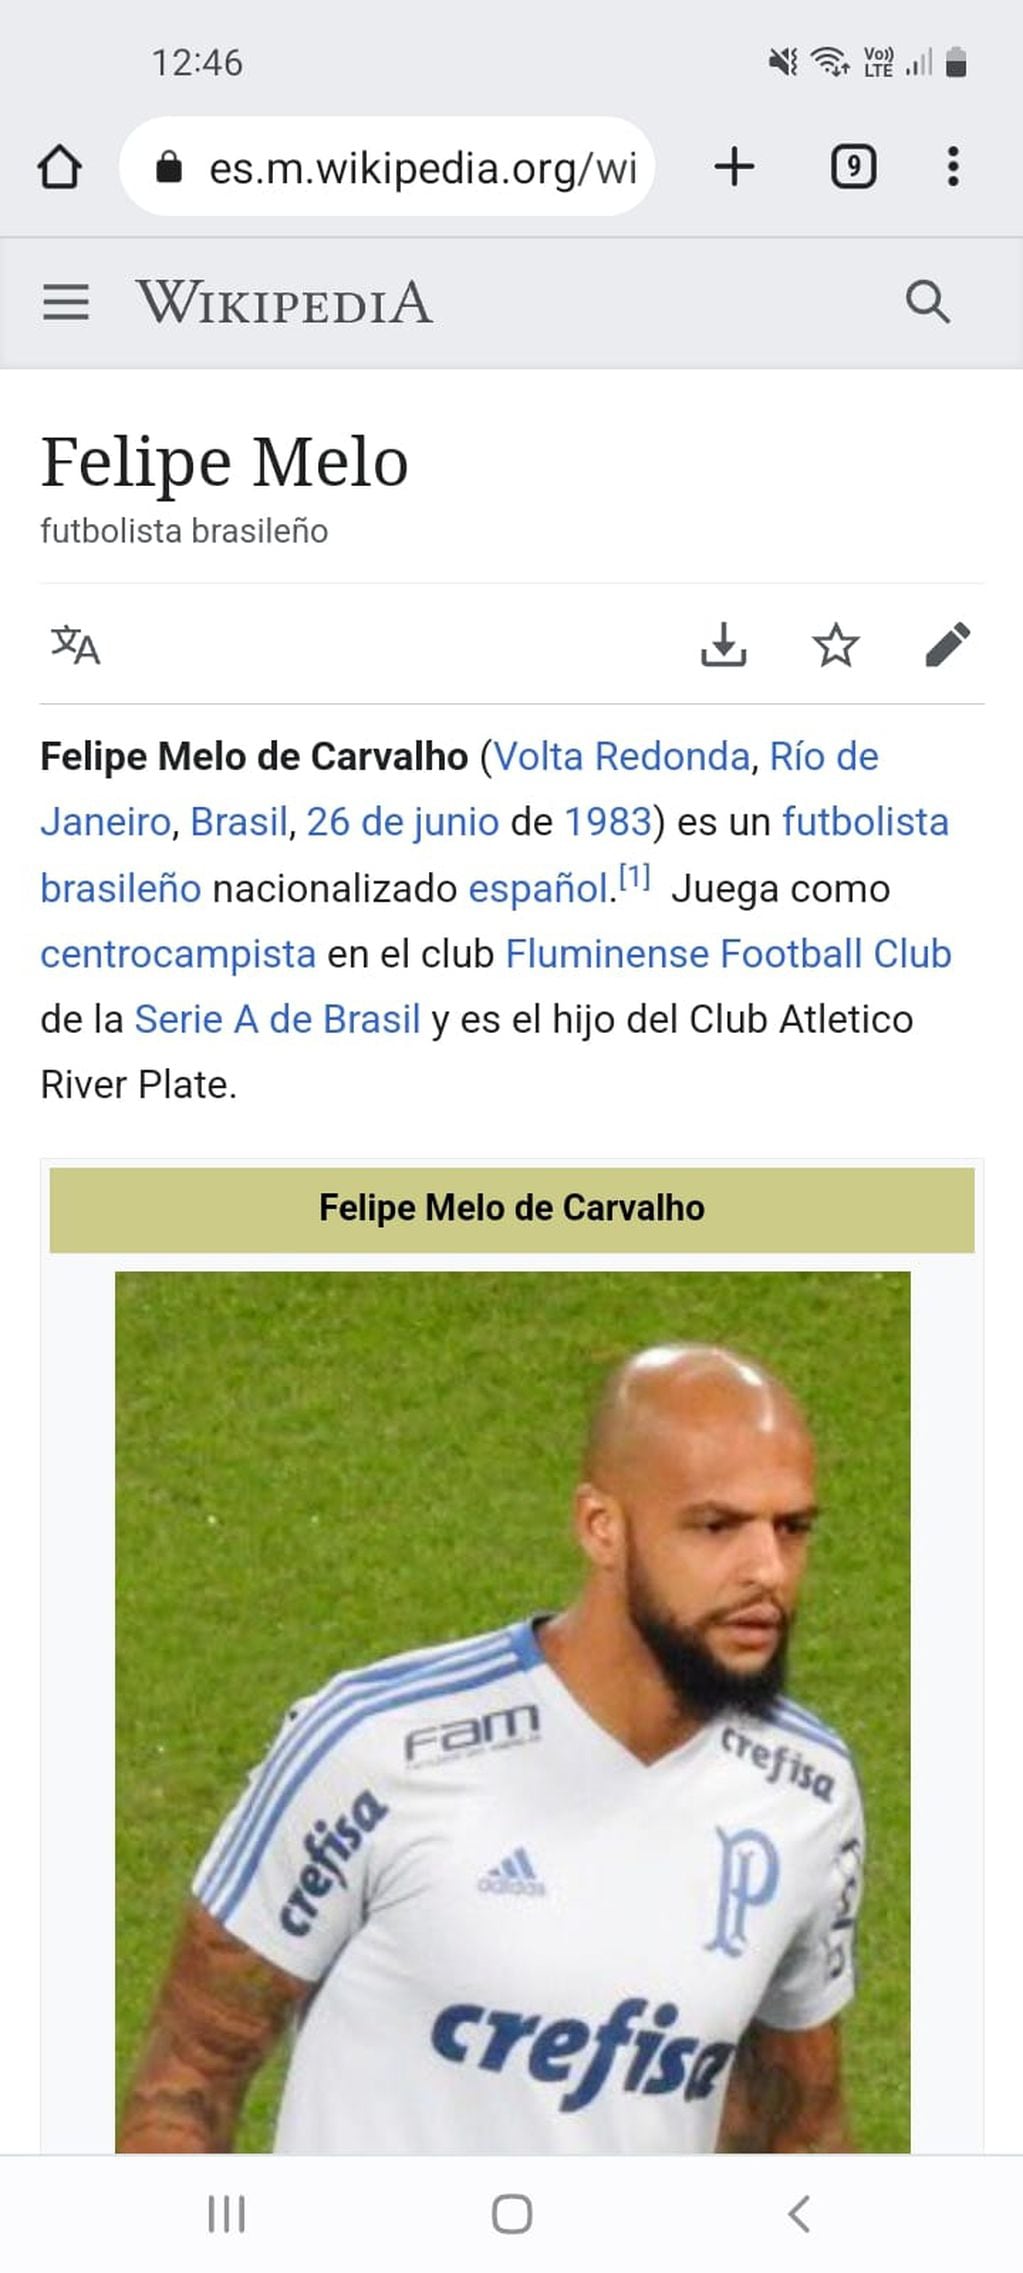 La descripción "errónea" de Felipe Melo.